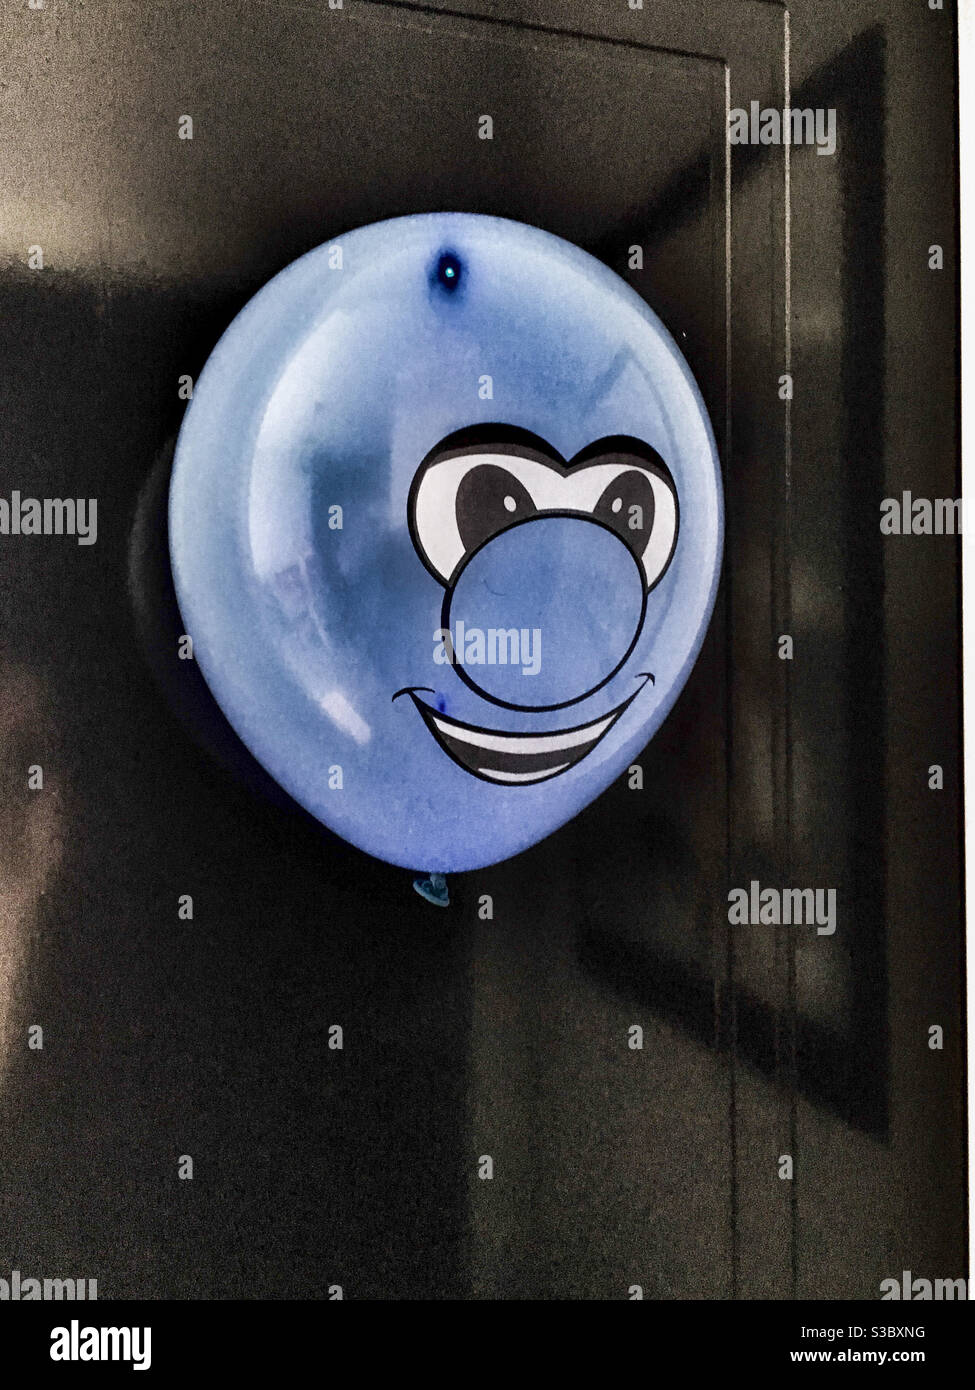 Weird blue smiley face balloon Stock Photo